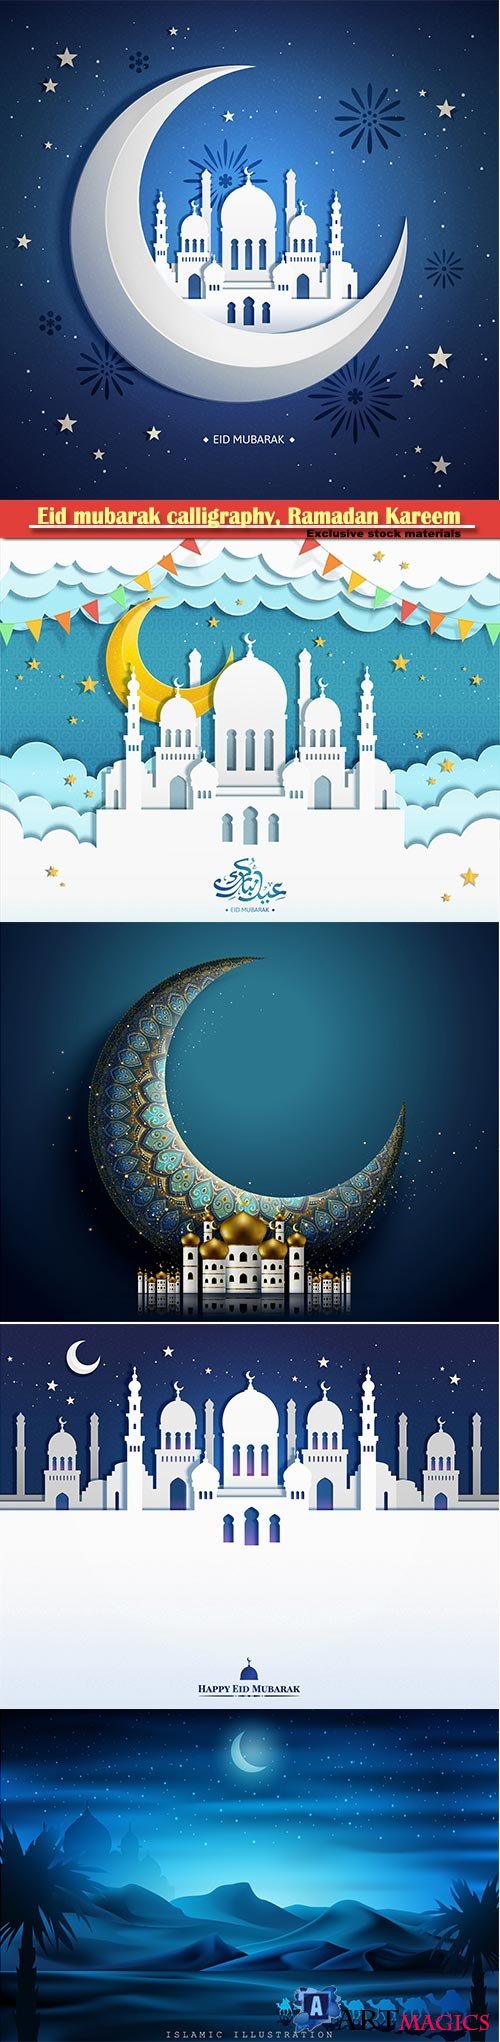 Eid mubarak calligraphy, Ramadan Kareem vector card # 12